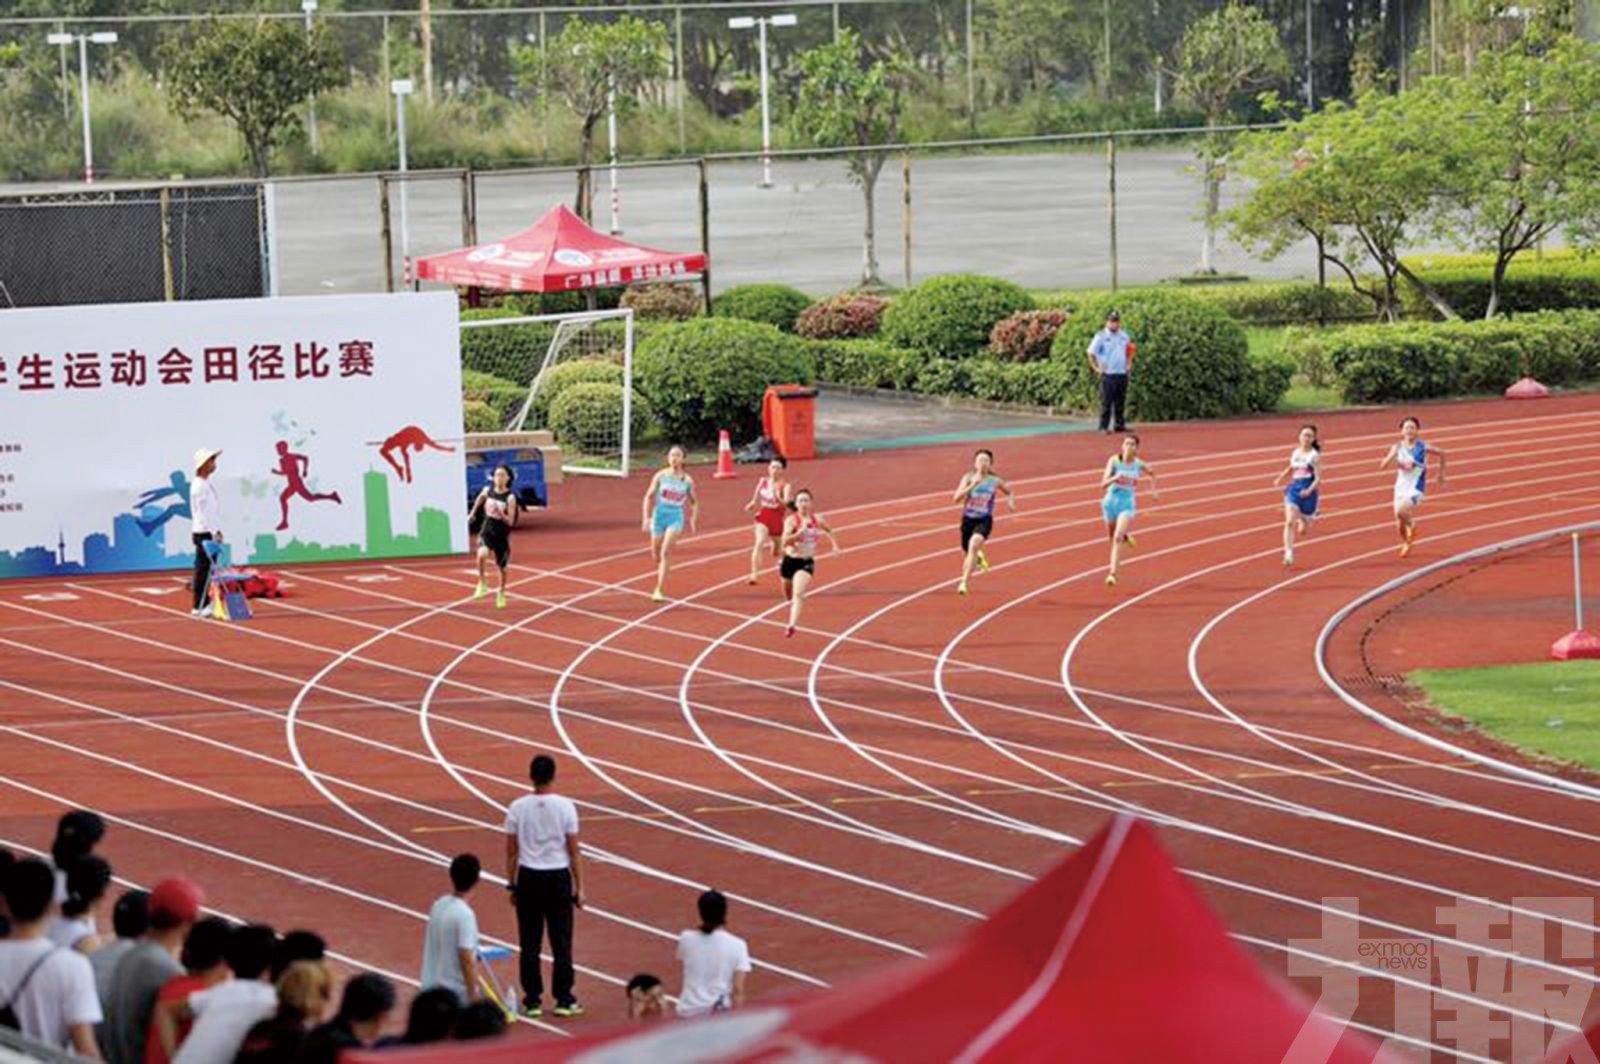 呂艶蘭打破200米跑澳門紀錄